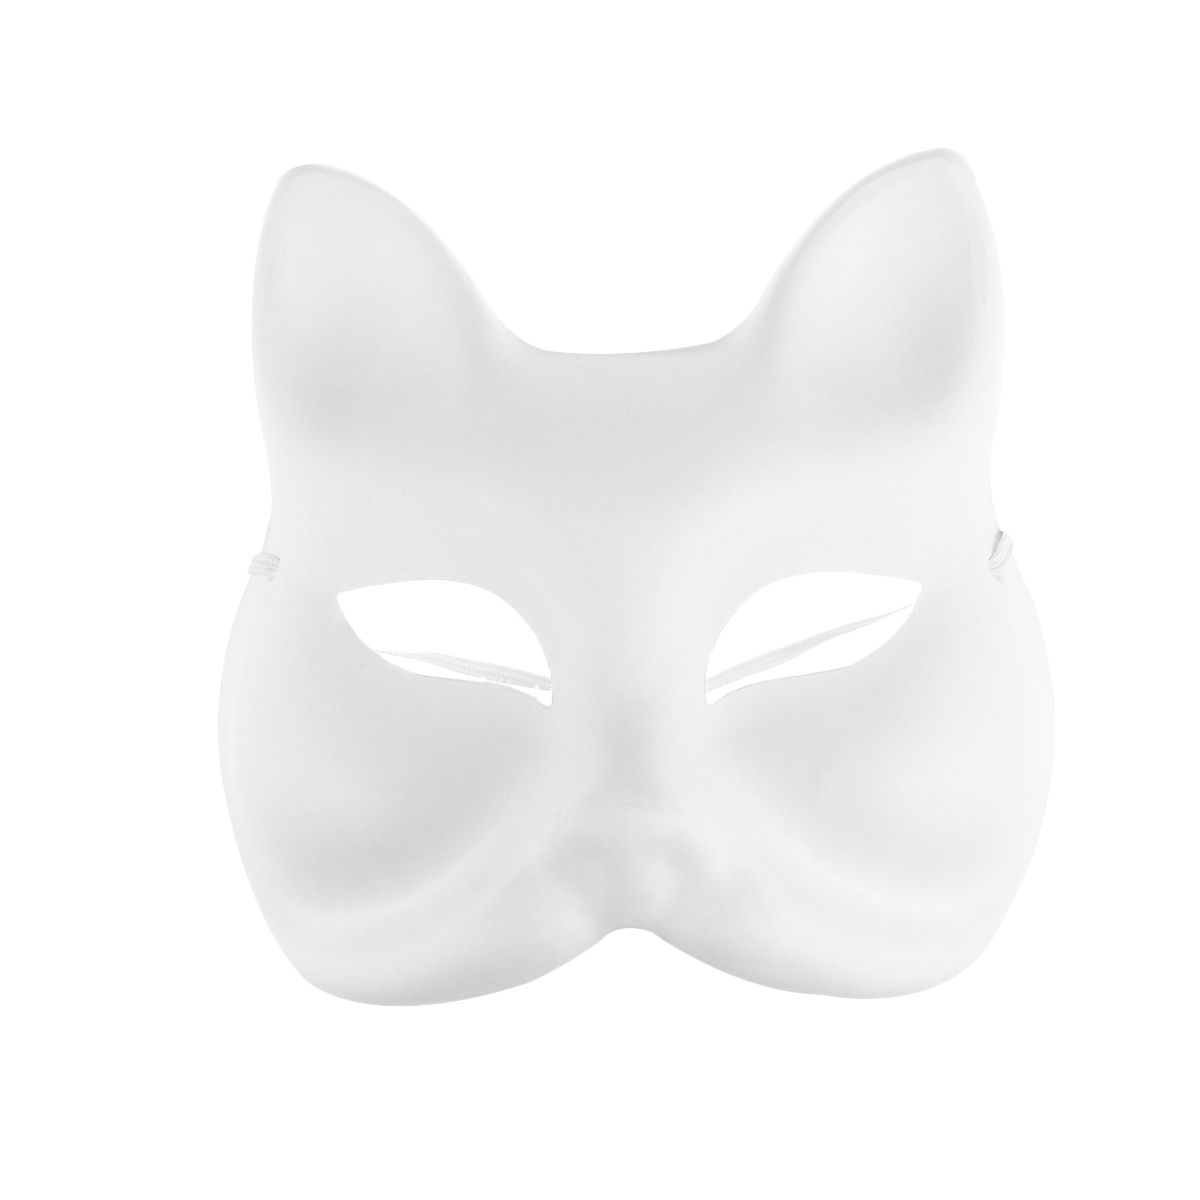 Квадробика без маски. Маска для квадробики. Маска кошки. Маска кошки пластмассовая. Маска кошки белая пластиковая.